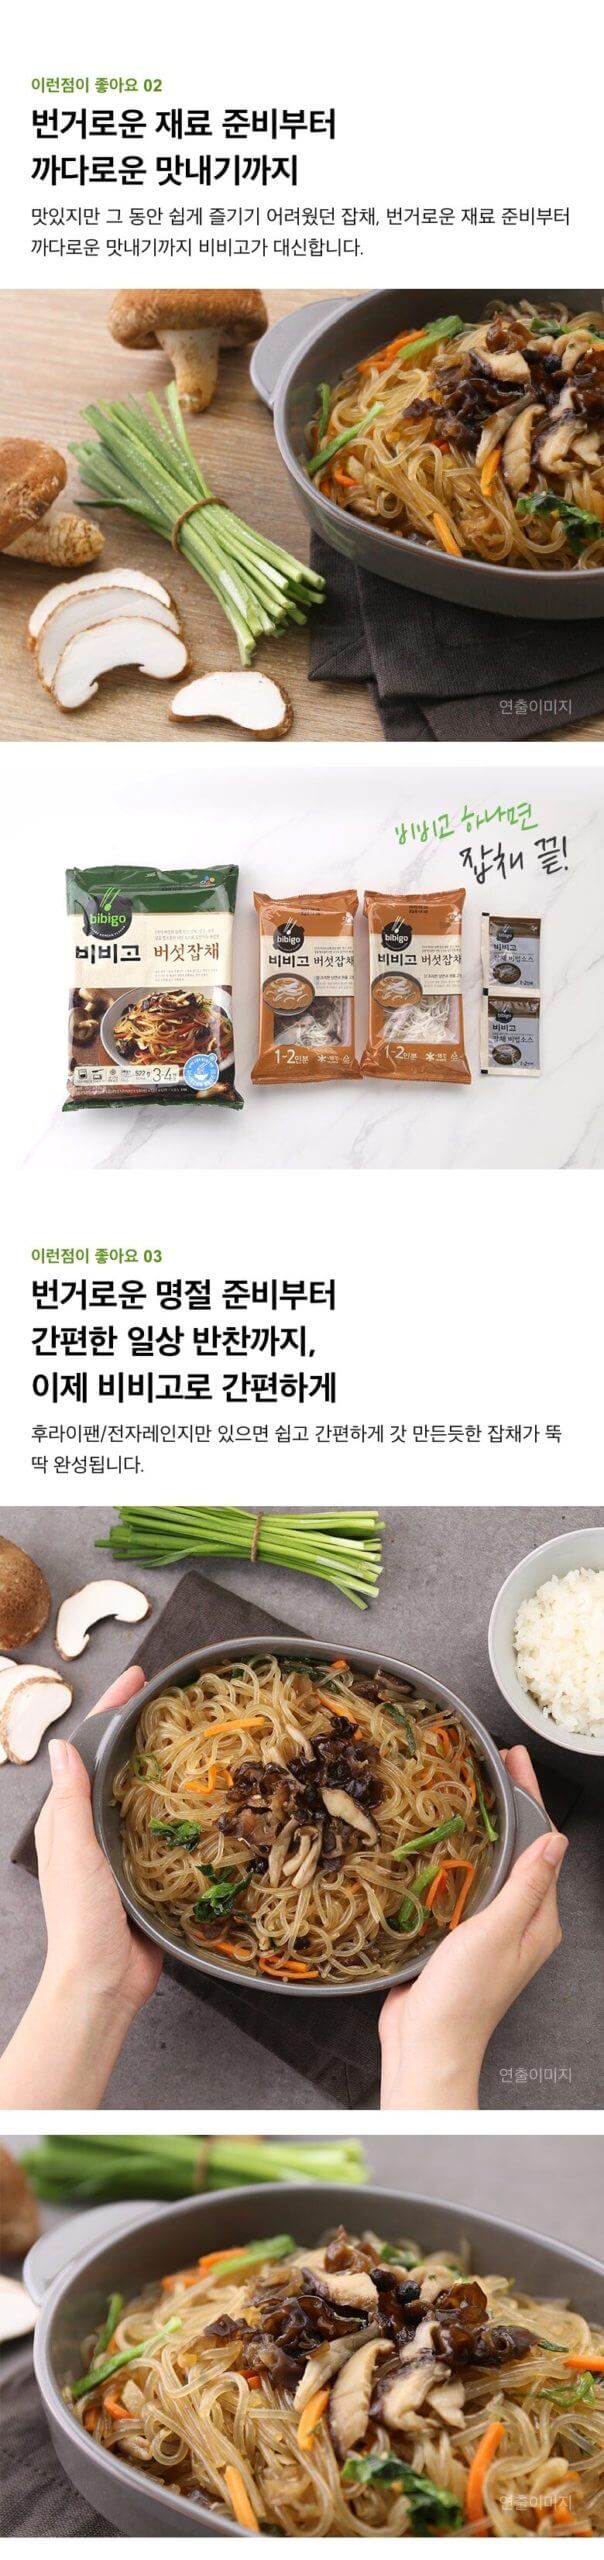 韓國食品-(Expiry Date: 19/6/2024)[CJ] Bibigo蘑菇粉絲 522g